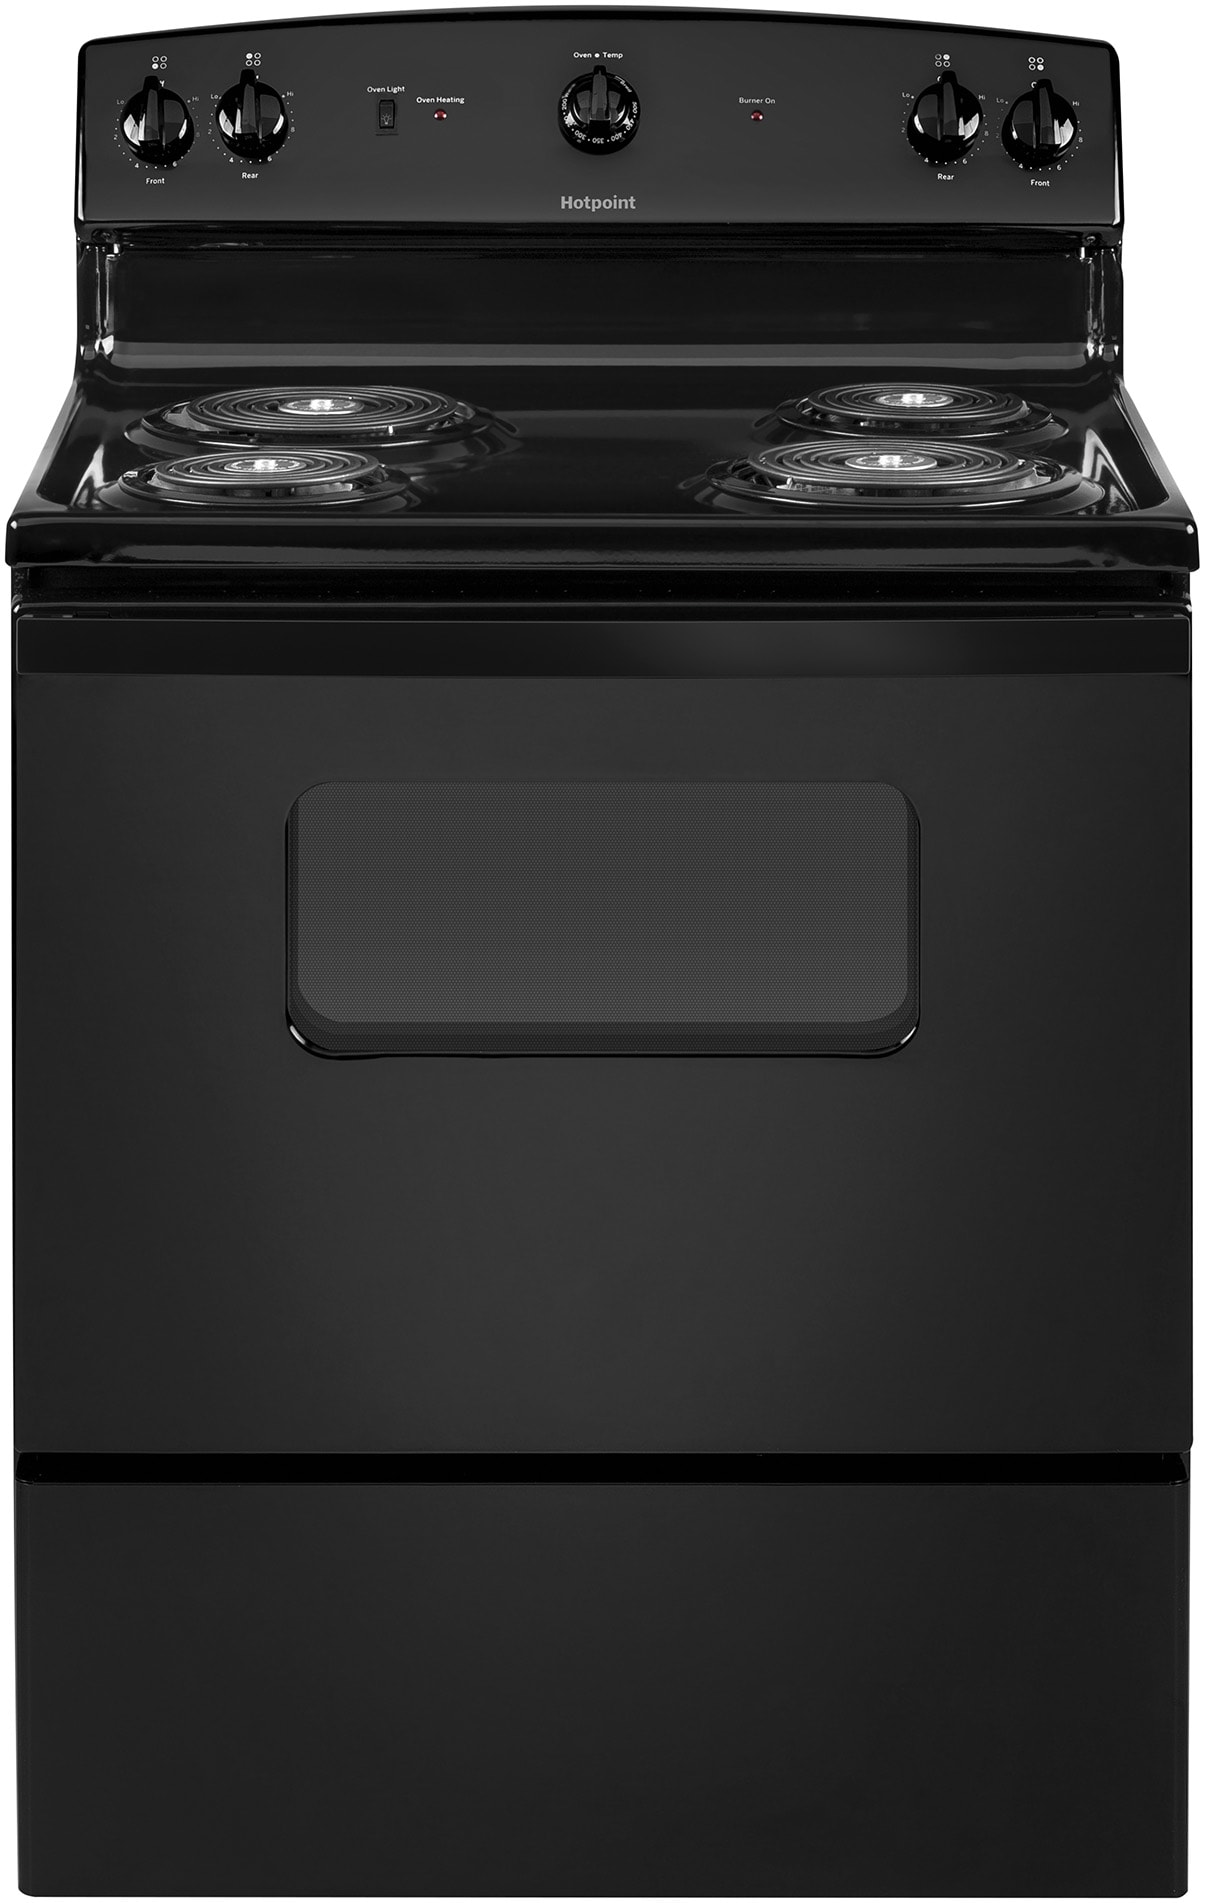 Induction Cooktop, 2-Burner Countertop Dual Ceramic Cooker Burner Stove 2400W 110V, Size: Large, Black